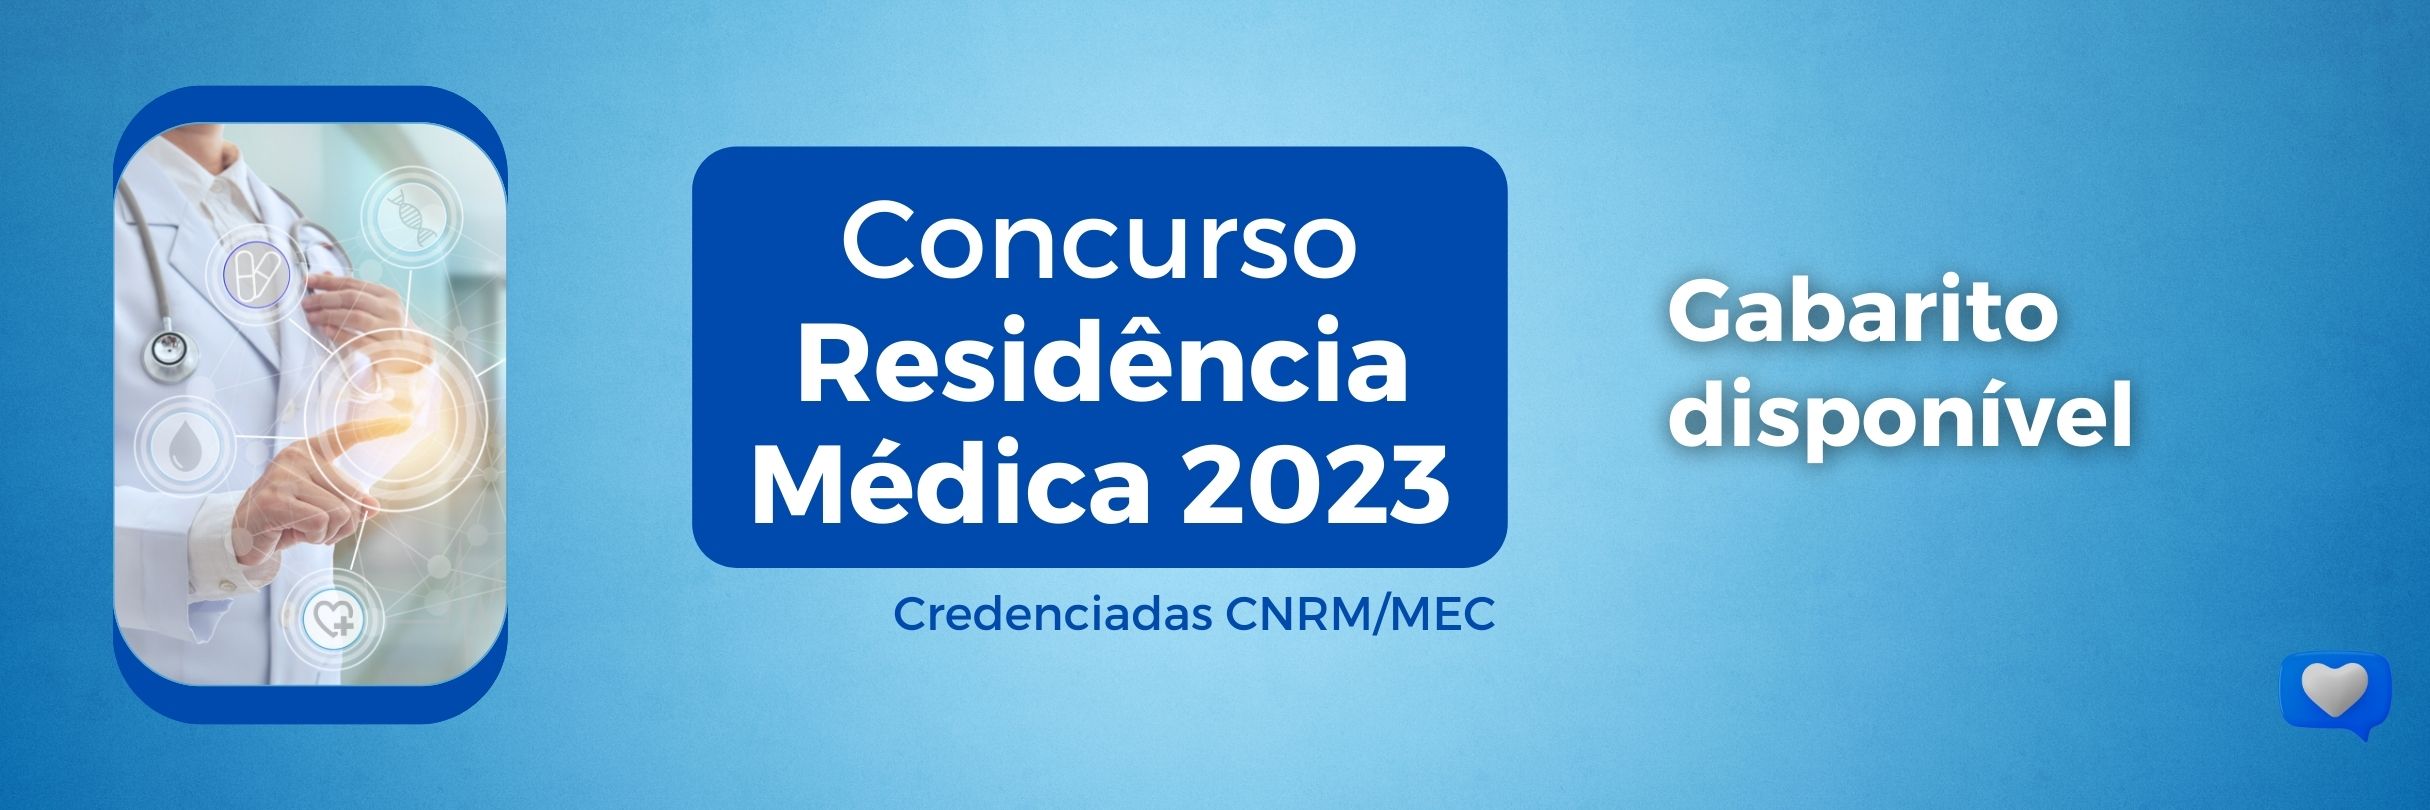 Gabarito da primeira fase disponível – Concurso de Residência Médica 2023